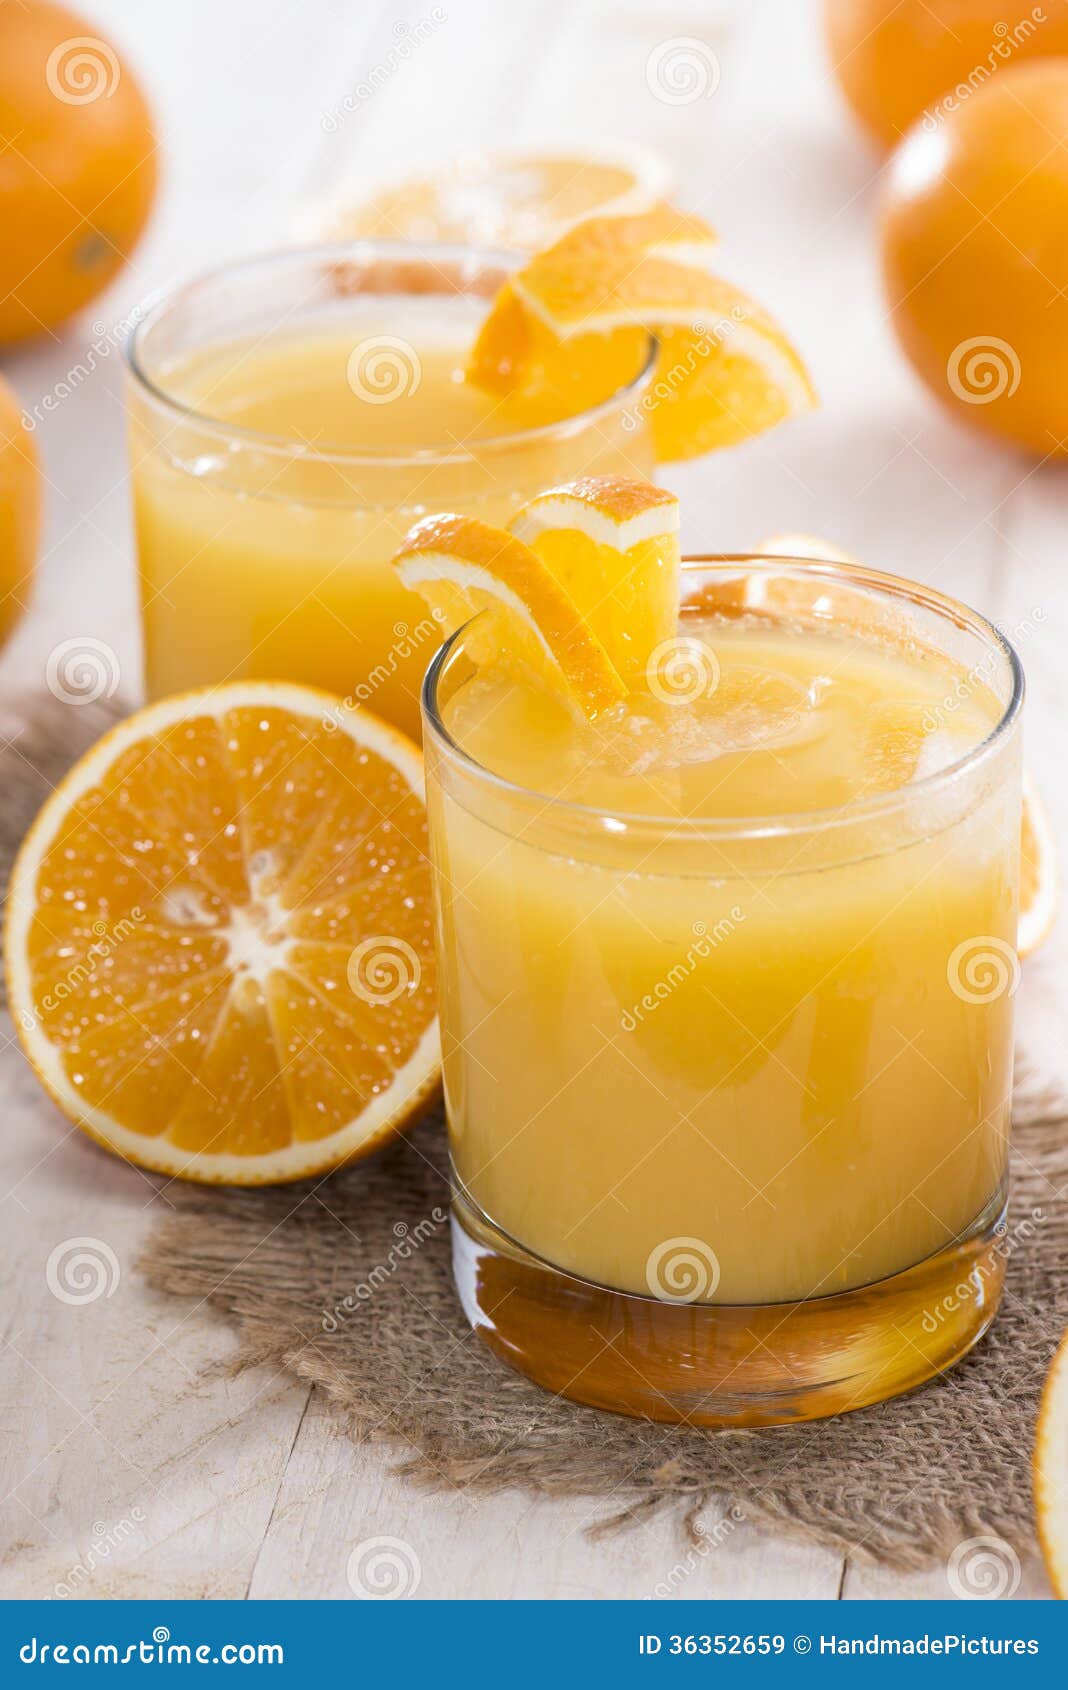 Как сделать апельсиновый сок в домашних условиях. Апельсиновый сок. Апельсиновый напиток. Цитрусовый сок. Апельсины для сока.